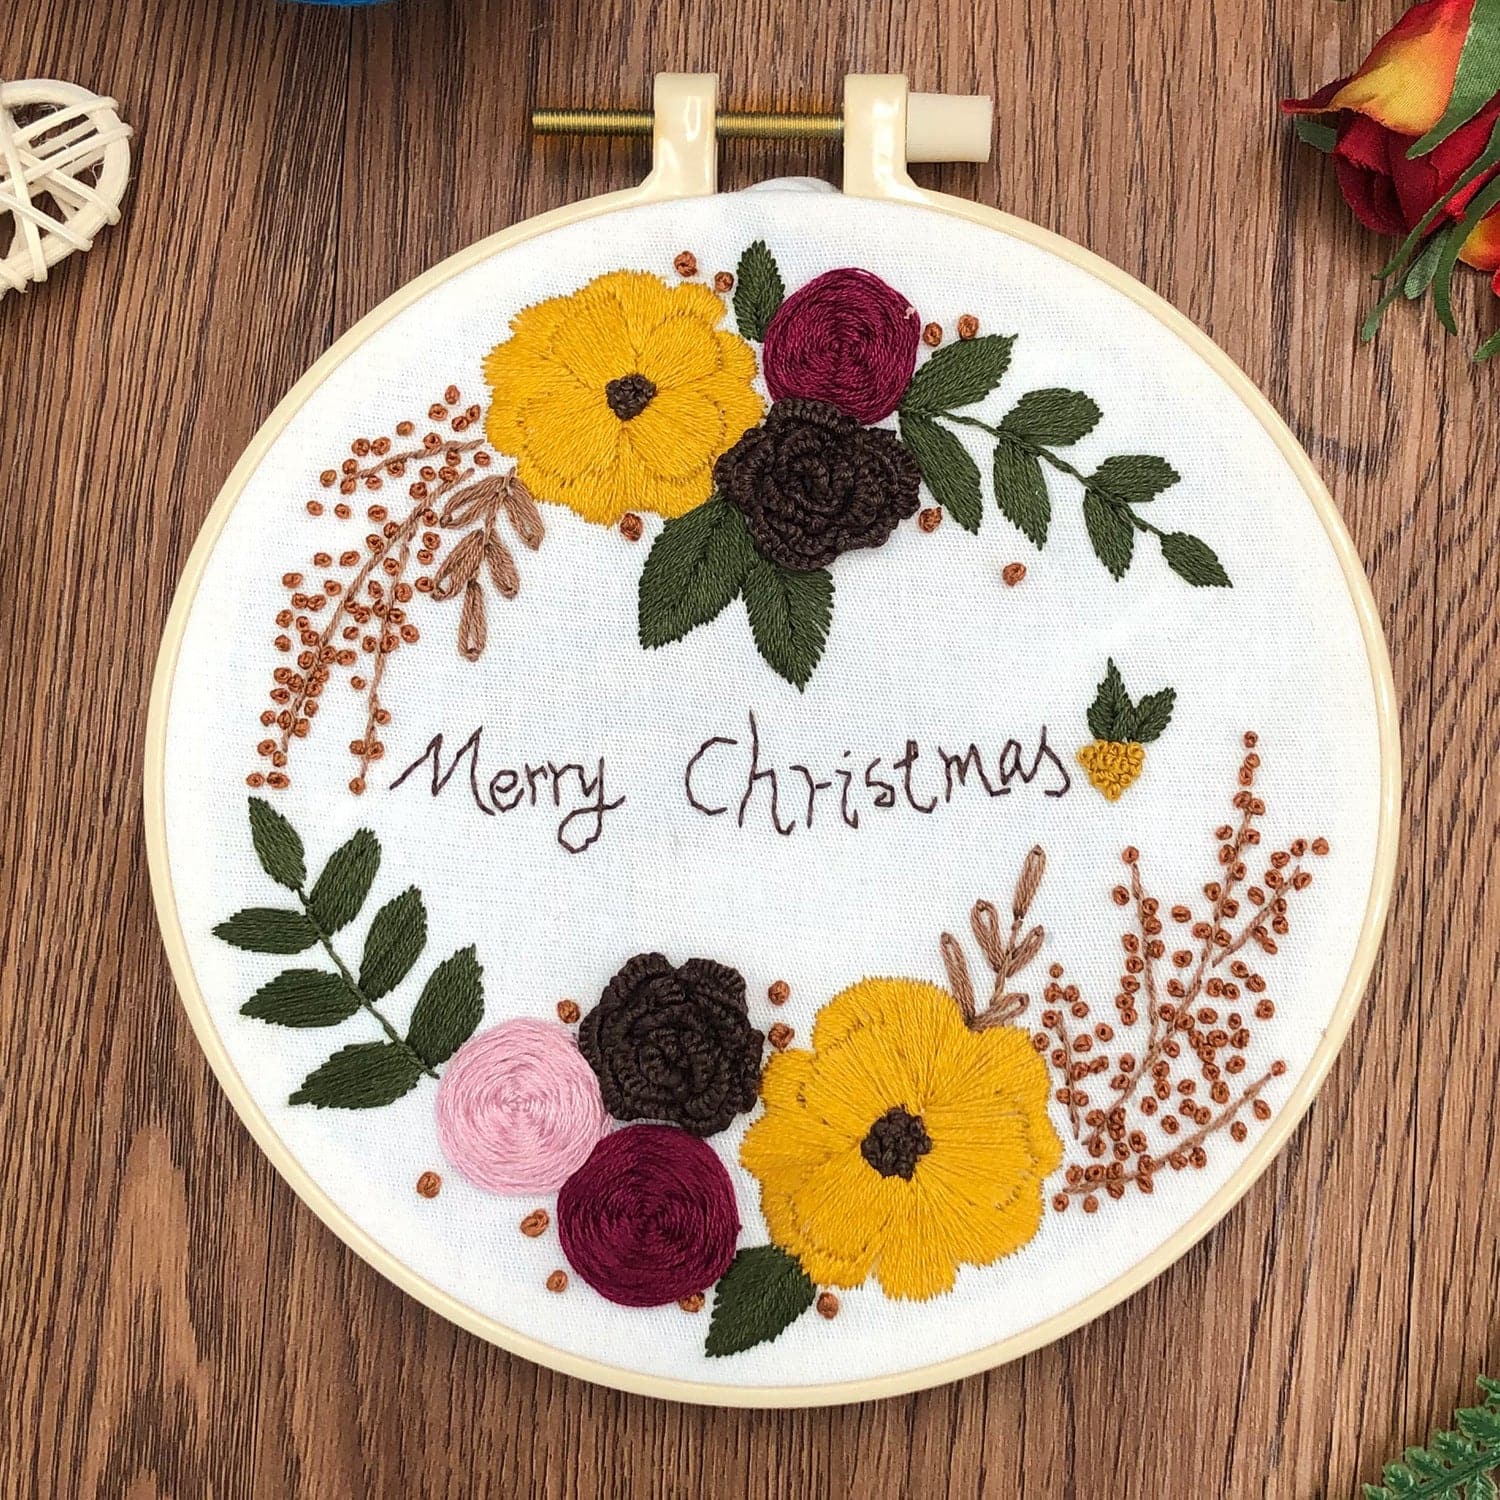 Christmas-embroidery ktclubs.com